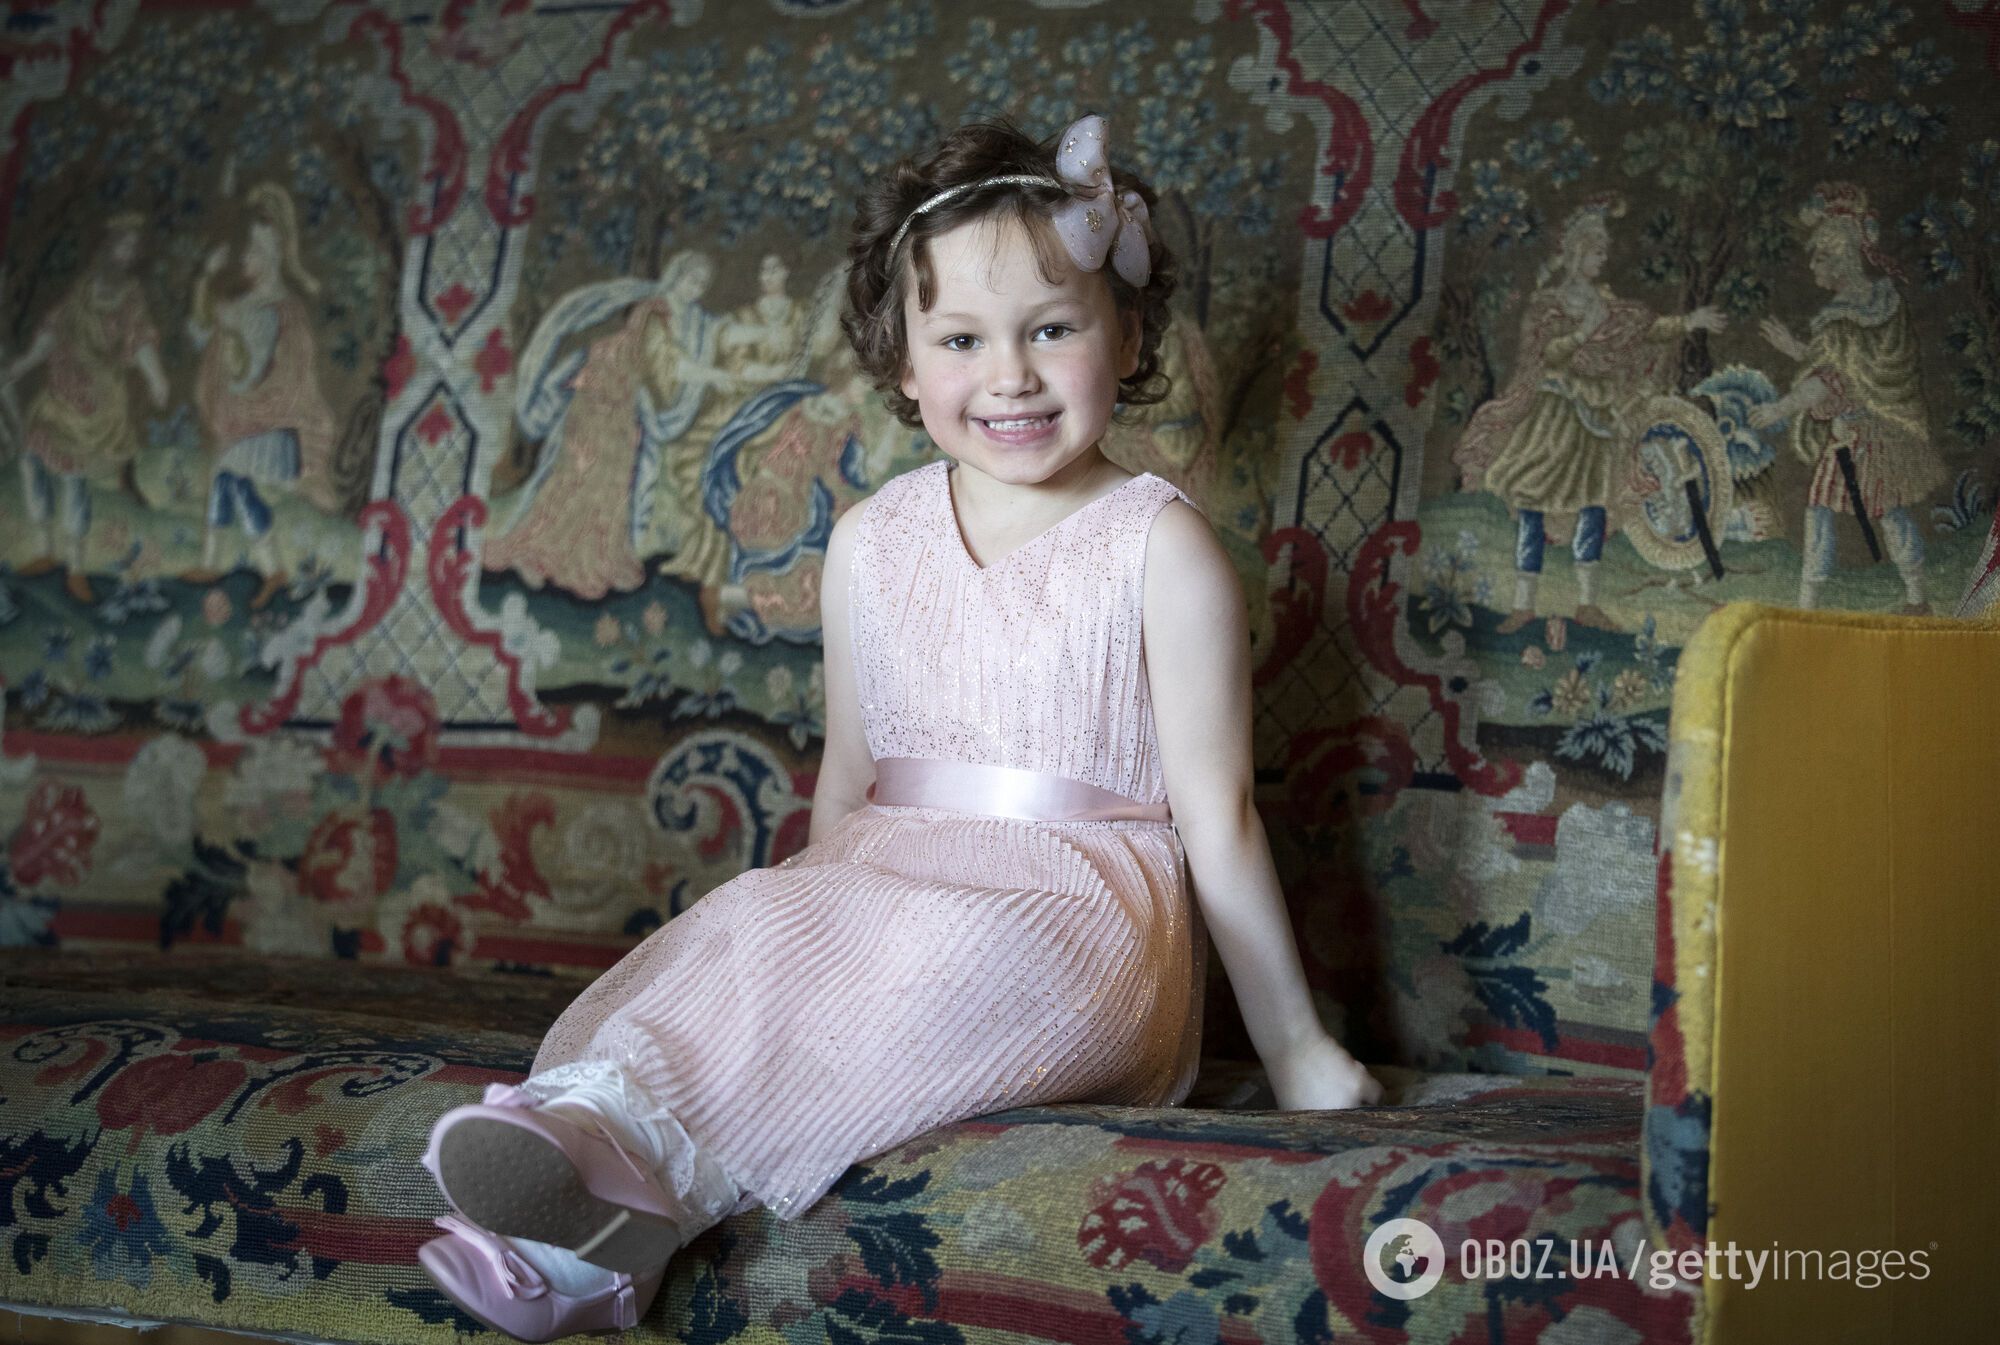 Маленькая девочка, поборовшая рак, трогательно обратилась к Кейт Миддлтон: в 2021 году ее поддерживала принцесса Уэльская. Фото